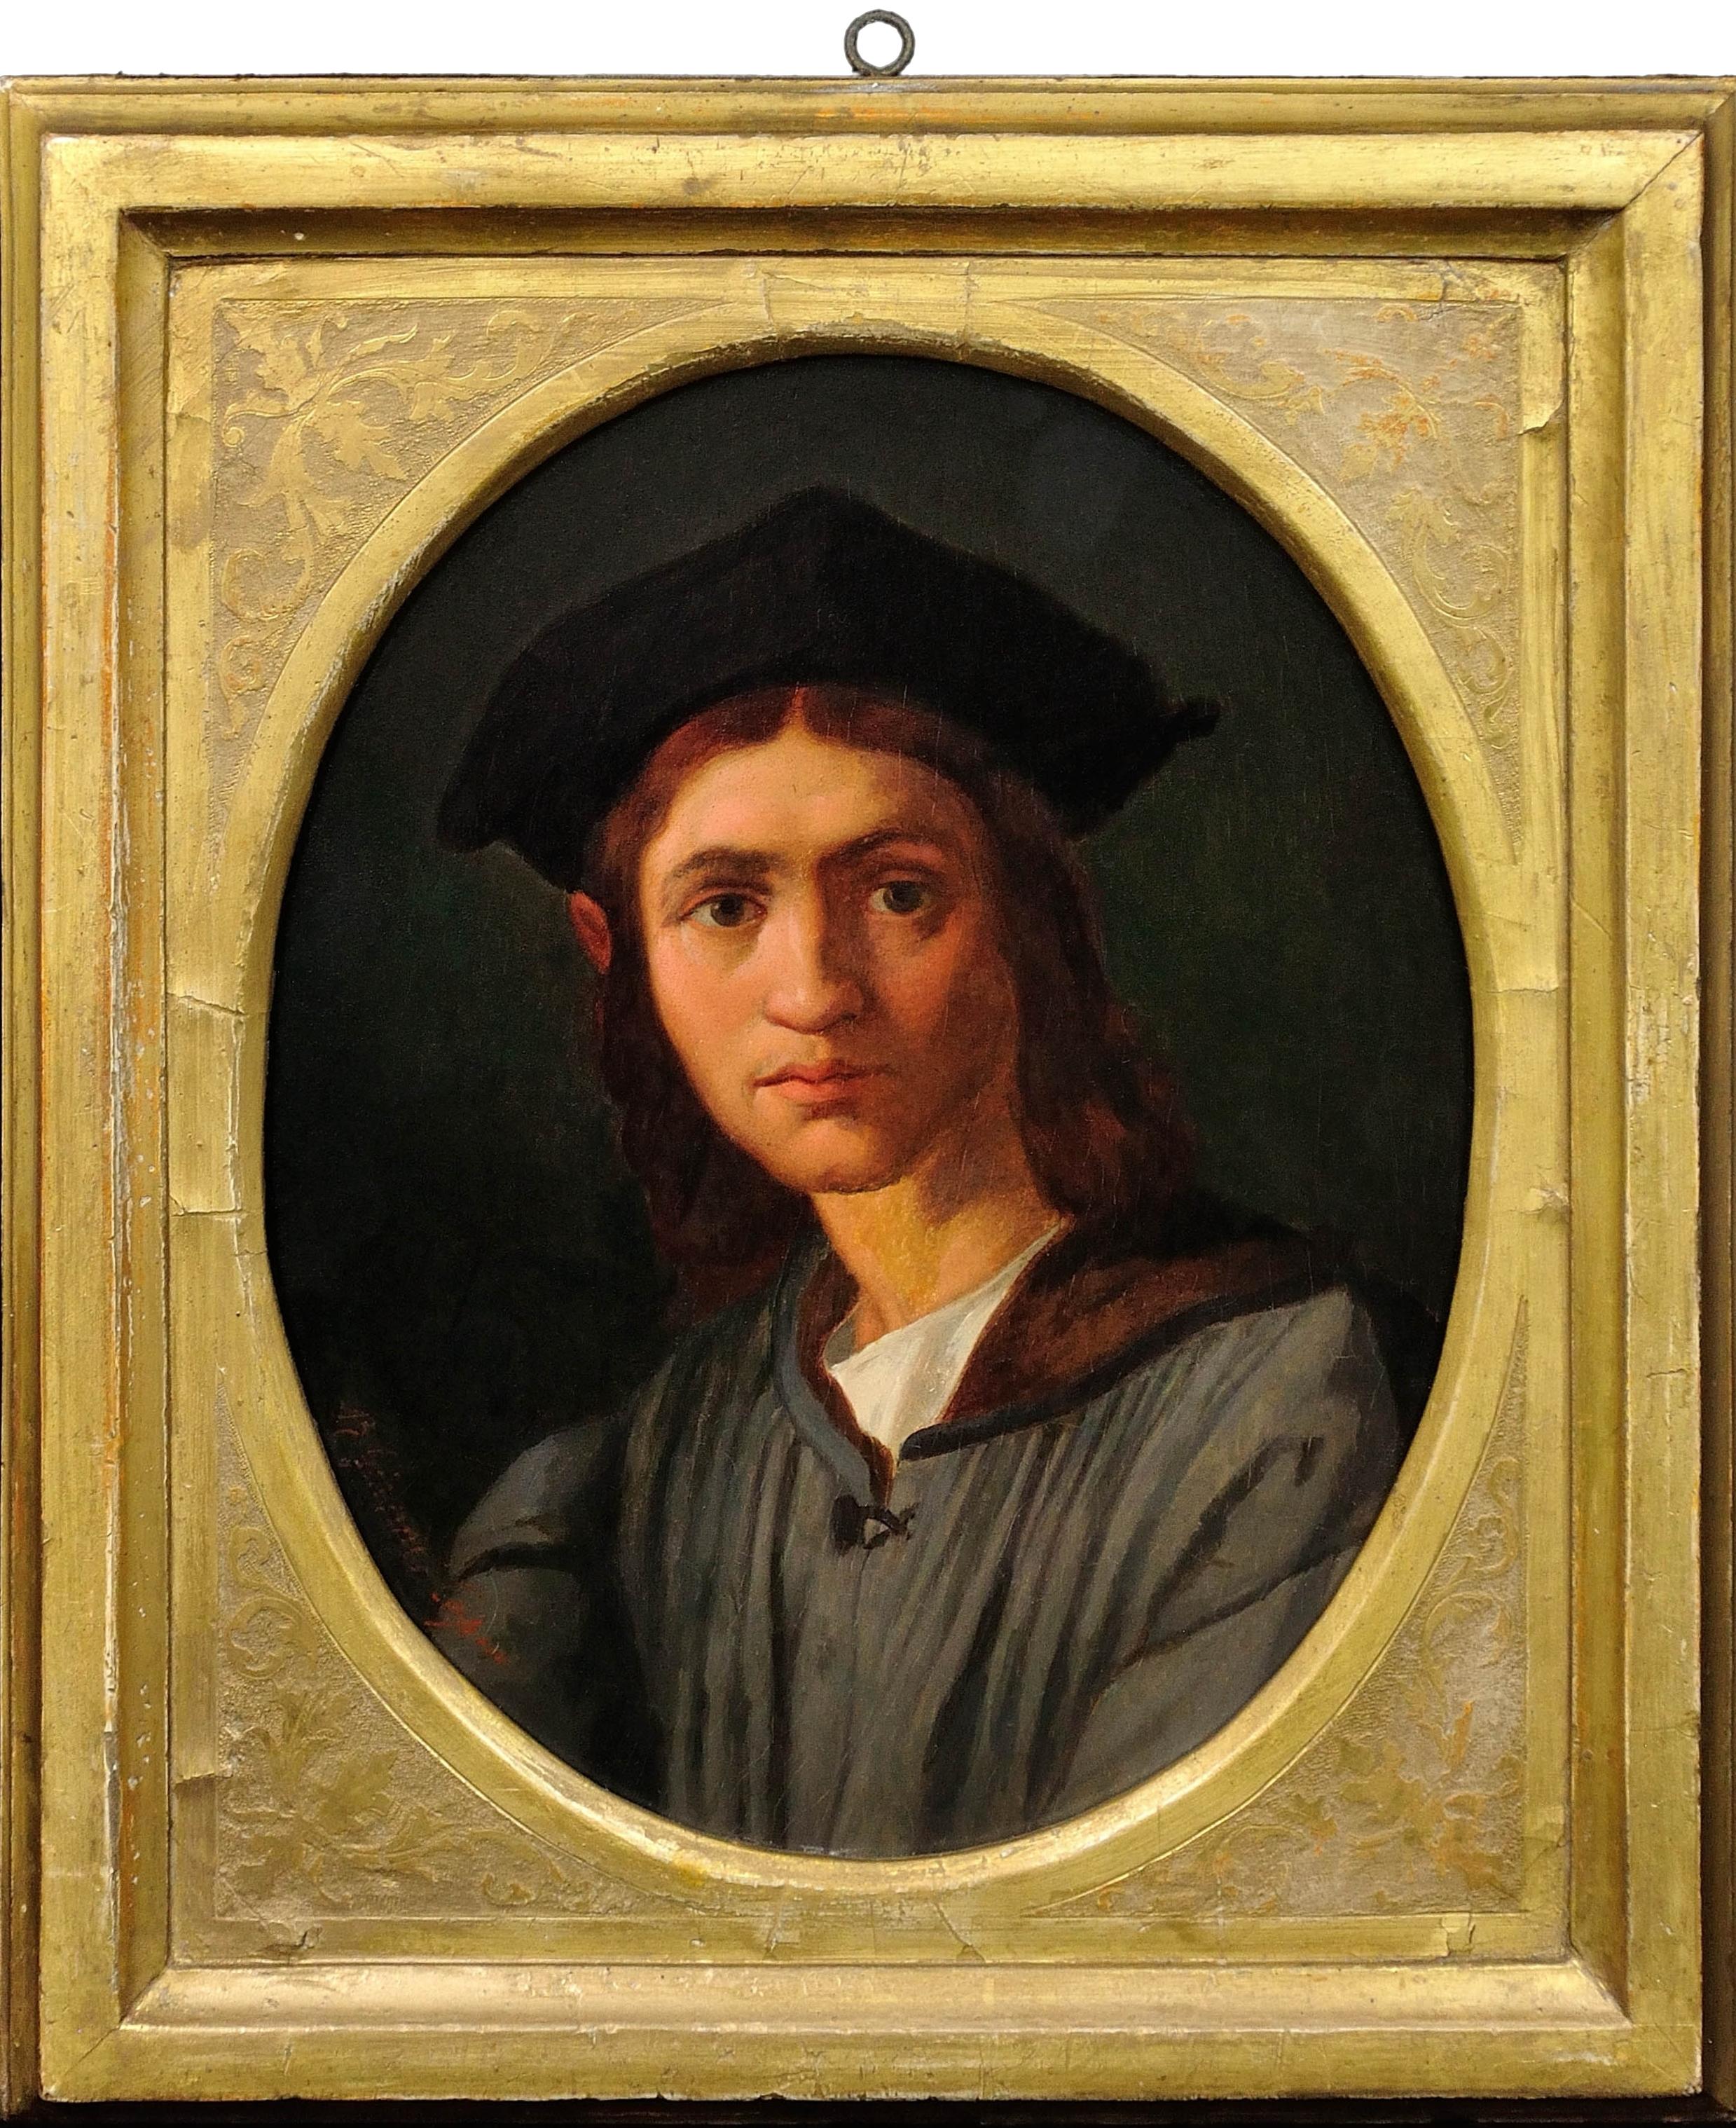 d'après Andrea del Sarto, vers 1863. Portrait de Baccio Bandinelli. Galerie des Offices